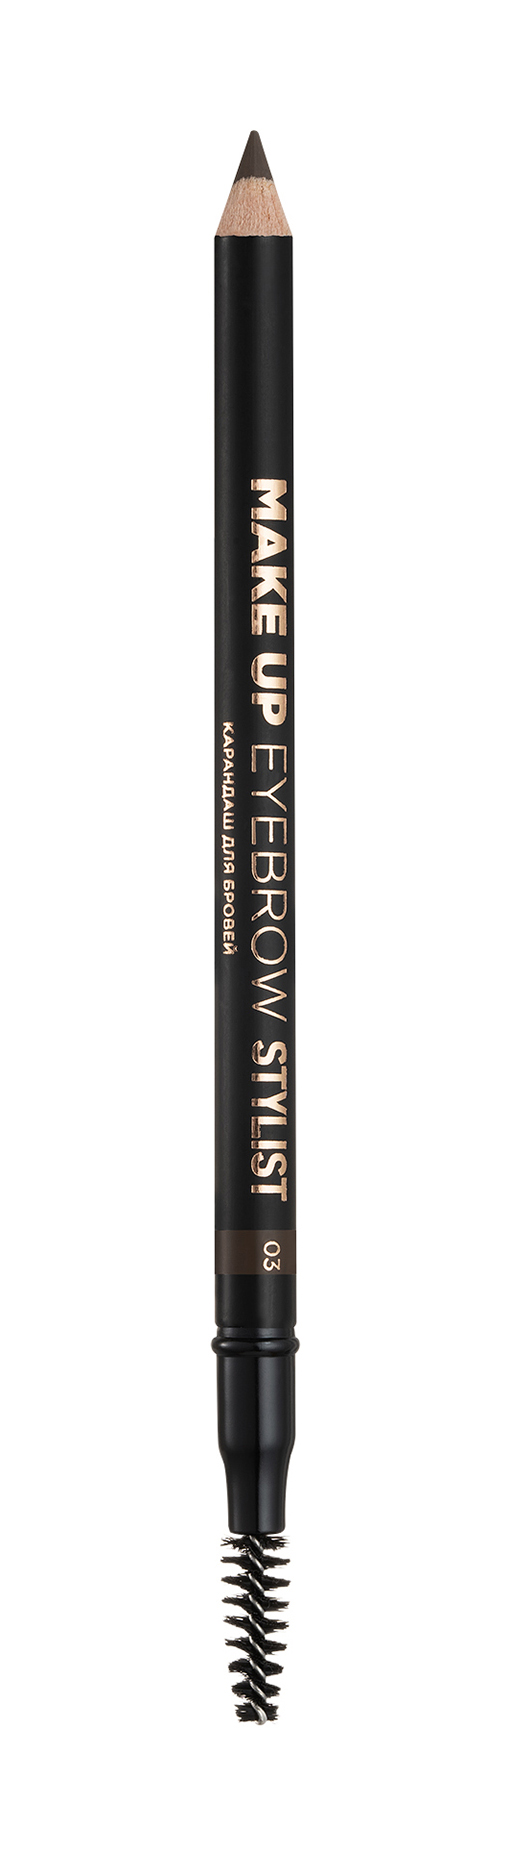 Карандаш для бровей Eva Mosaic Make up Eyebrow Stylist 3 оттенок christian louboutin beauty карандаш для бровей оттенок brunette